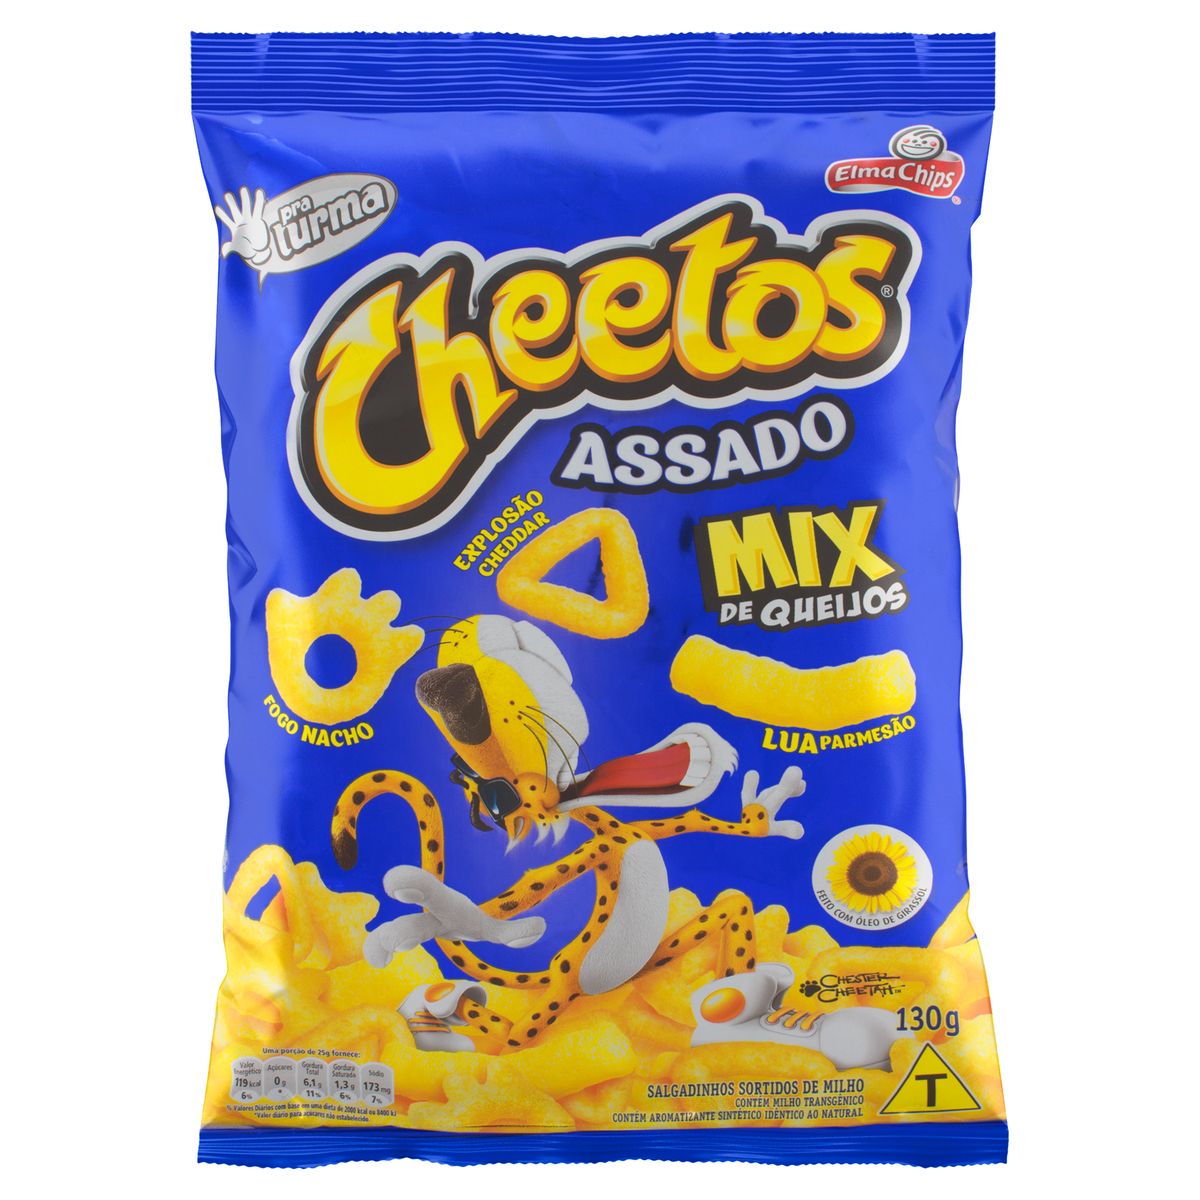 Salgadinho de Milho Mix de Queijos Cheetos 41g